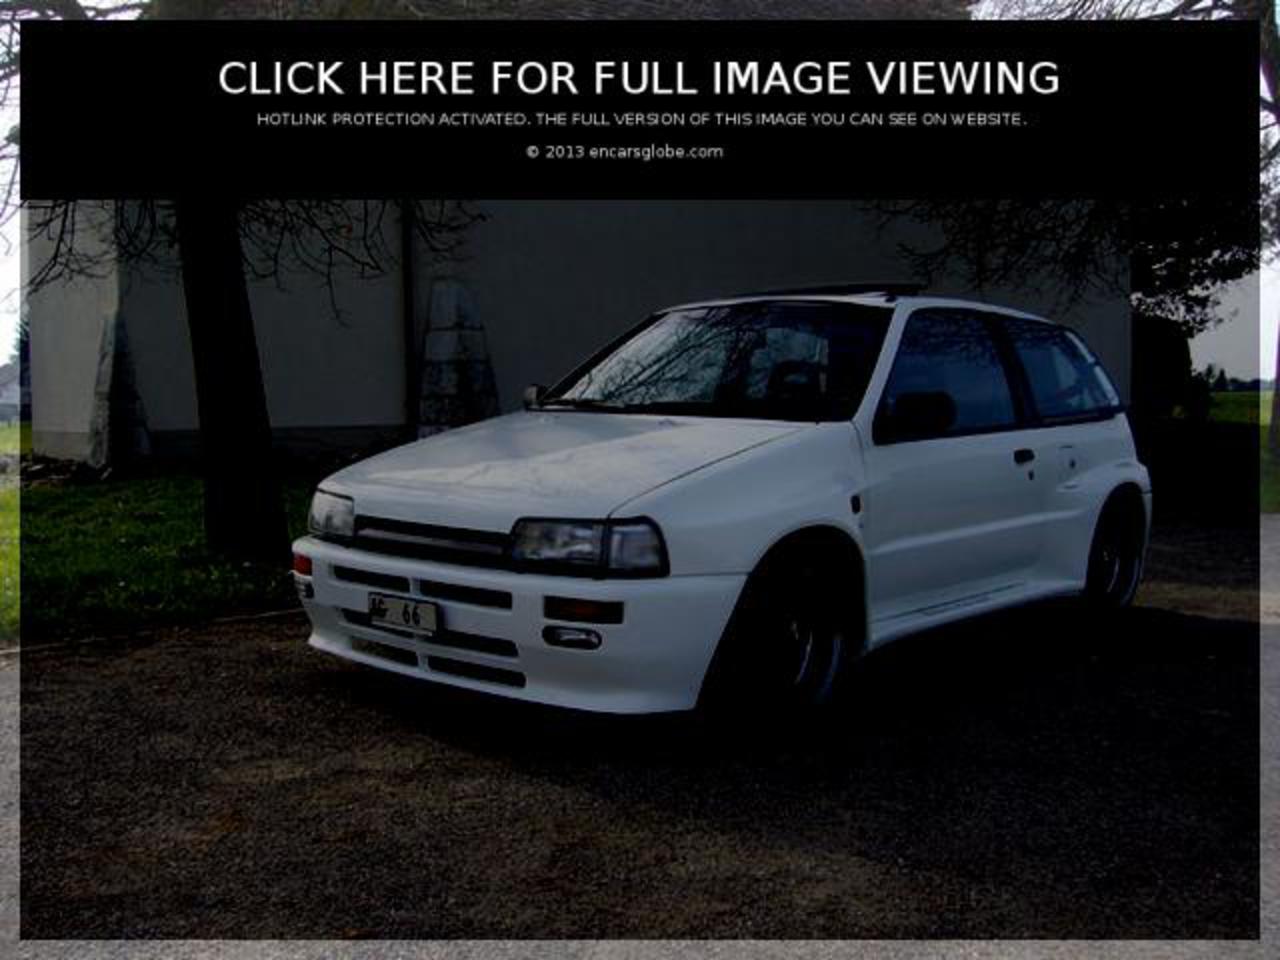 Daihatsu Charade Turbo: Galerie de photos, informations complètes sur...